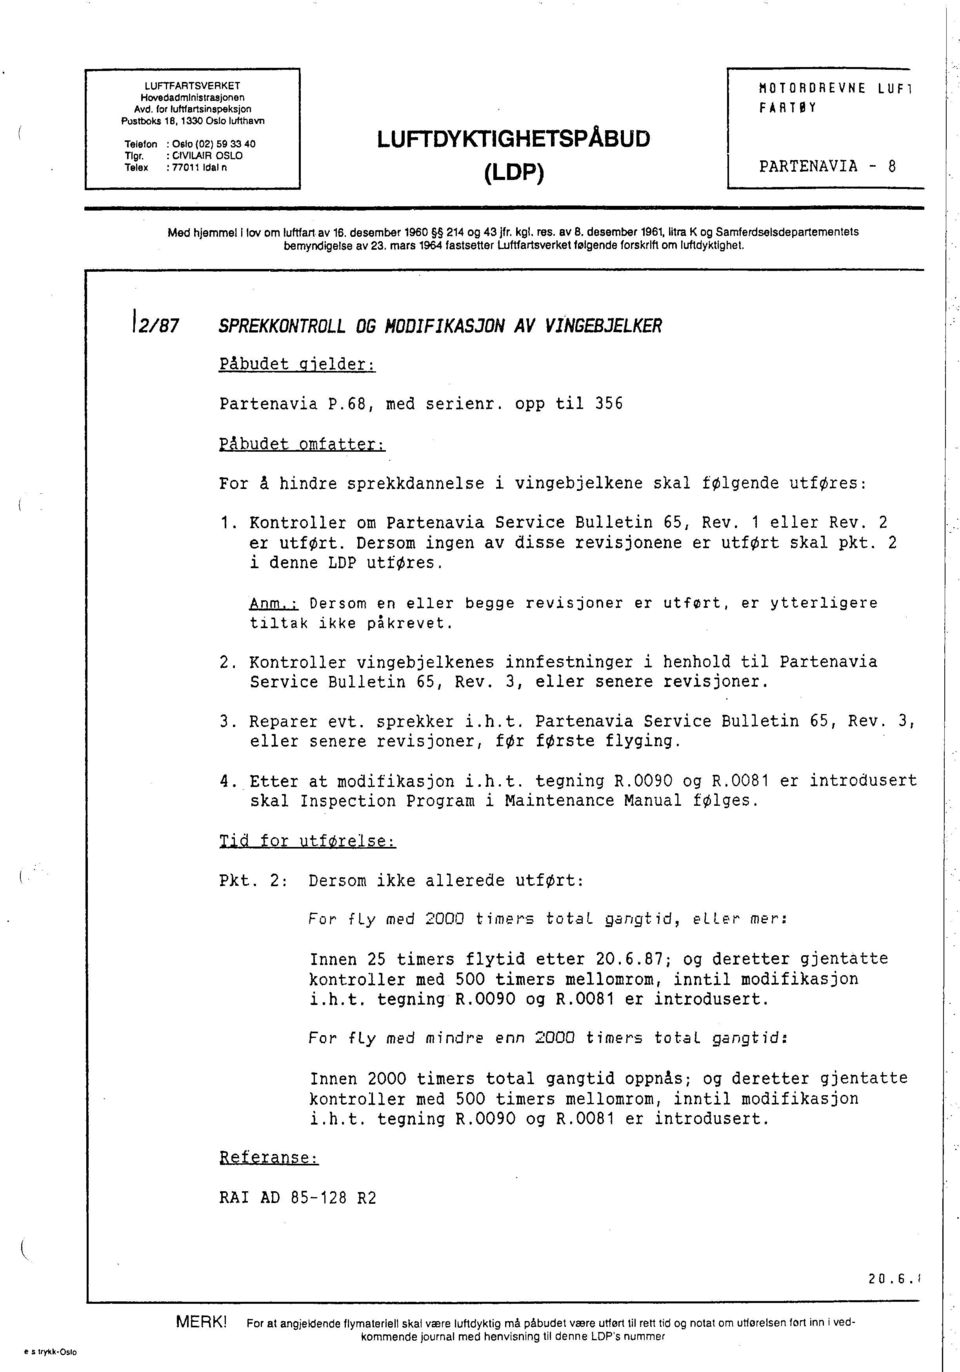 res, BV B, desember 1961, litra K og Samferdselsdepartementets bemyndigelse av 23, mars 196 fastsetter l.ftartsverket følgende forskrift om lufdyklighet.